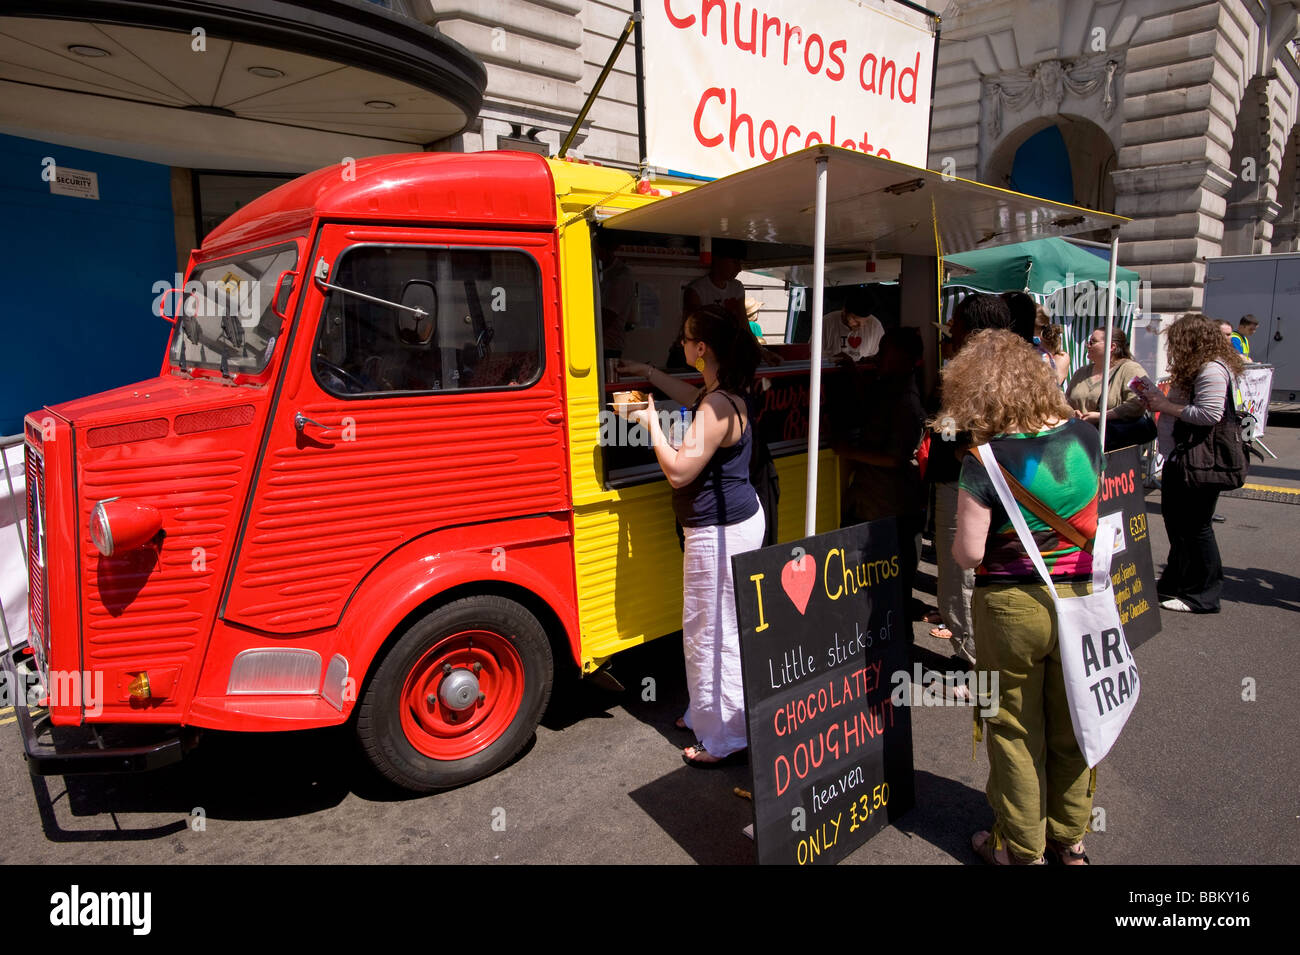 Les gens apprécient la culture espagnole au cours de festival 'le goût de l'Espagne' sur Regent Street, W1, Londres, Royaume-Uni Banque D'Images